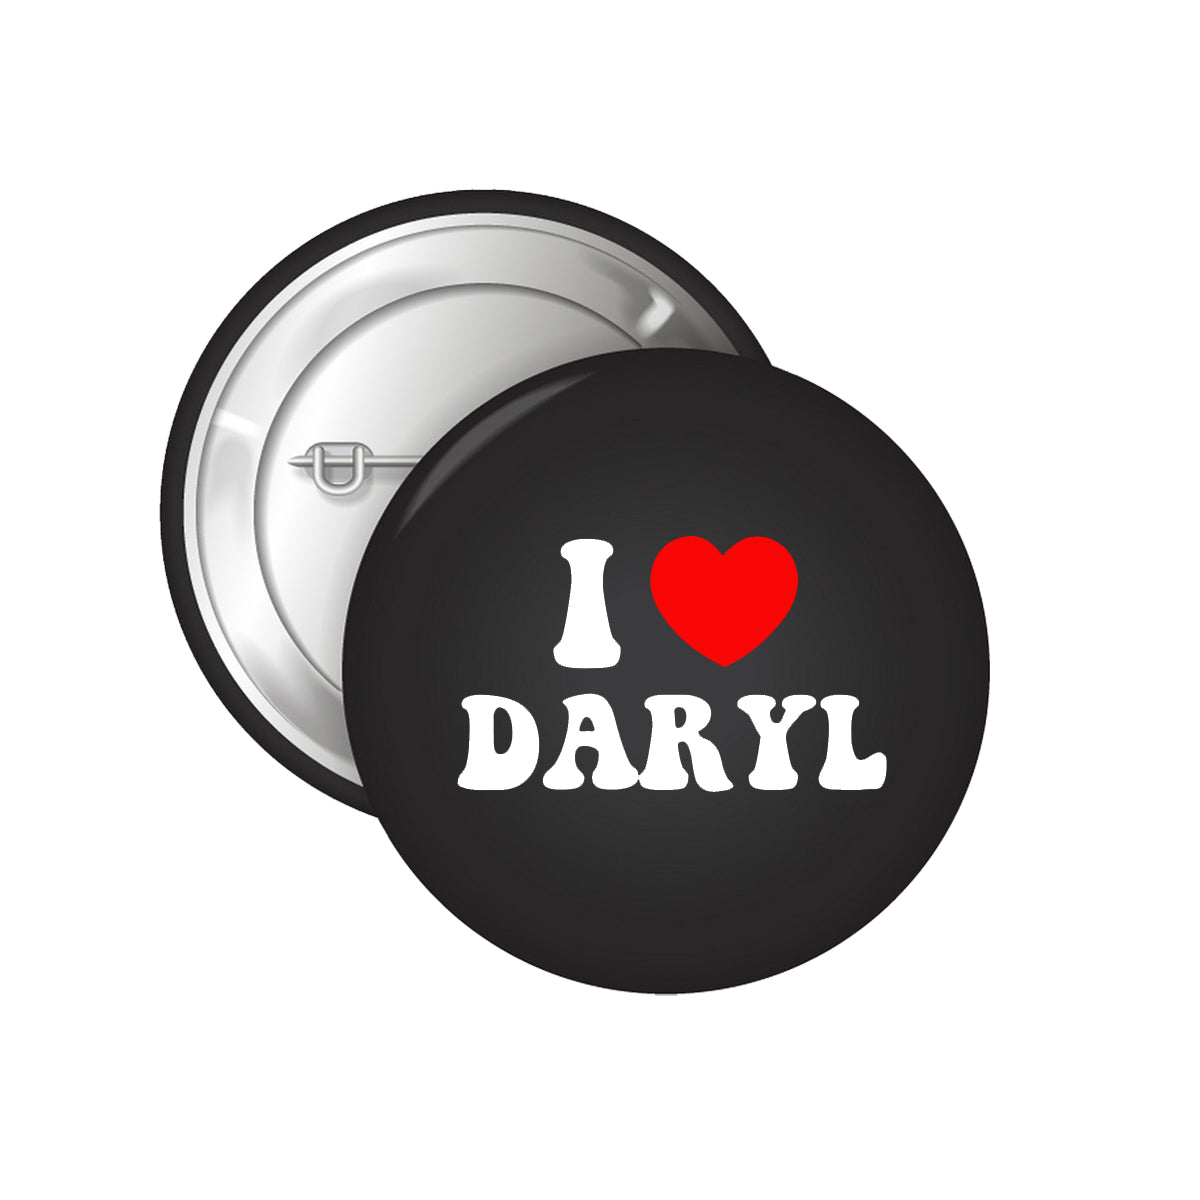 I Heart Daryl Button Badge